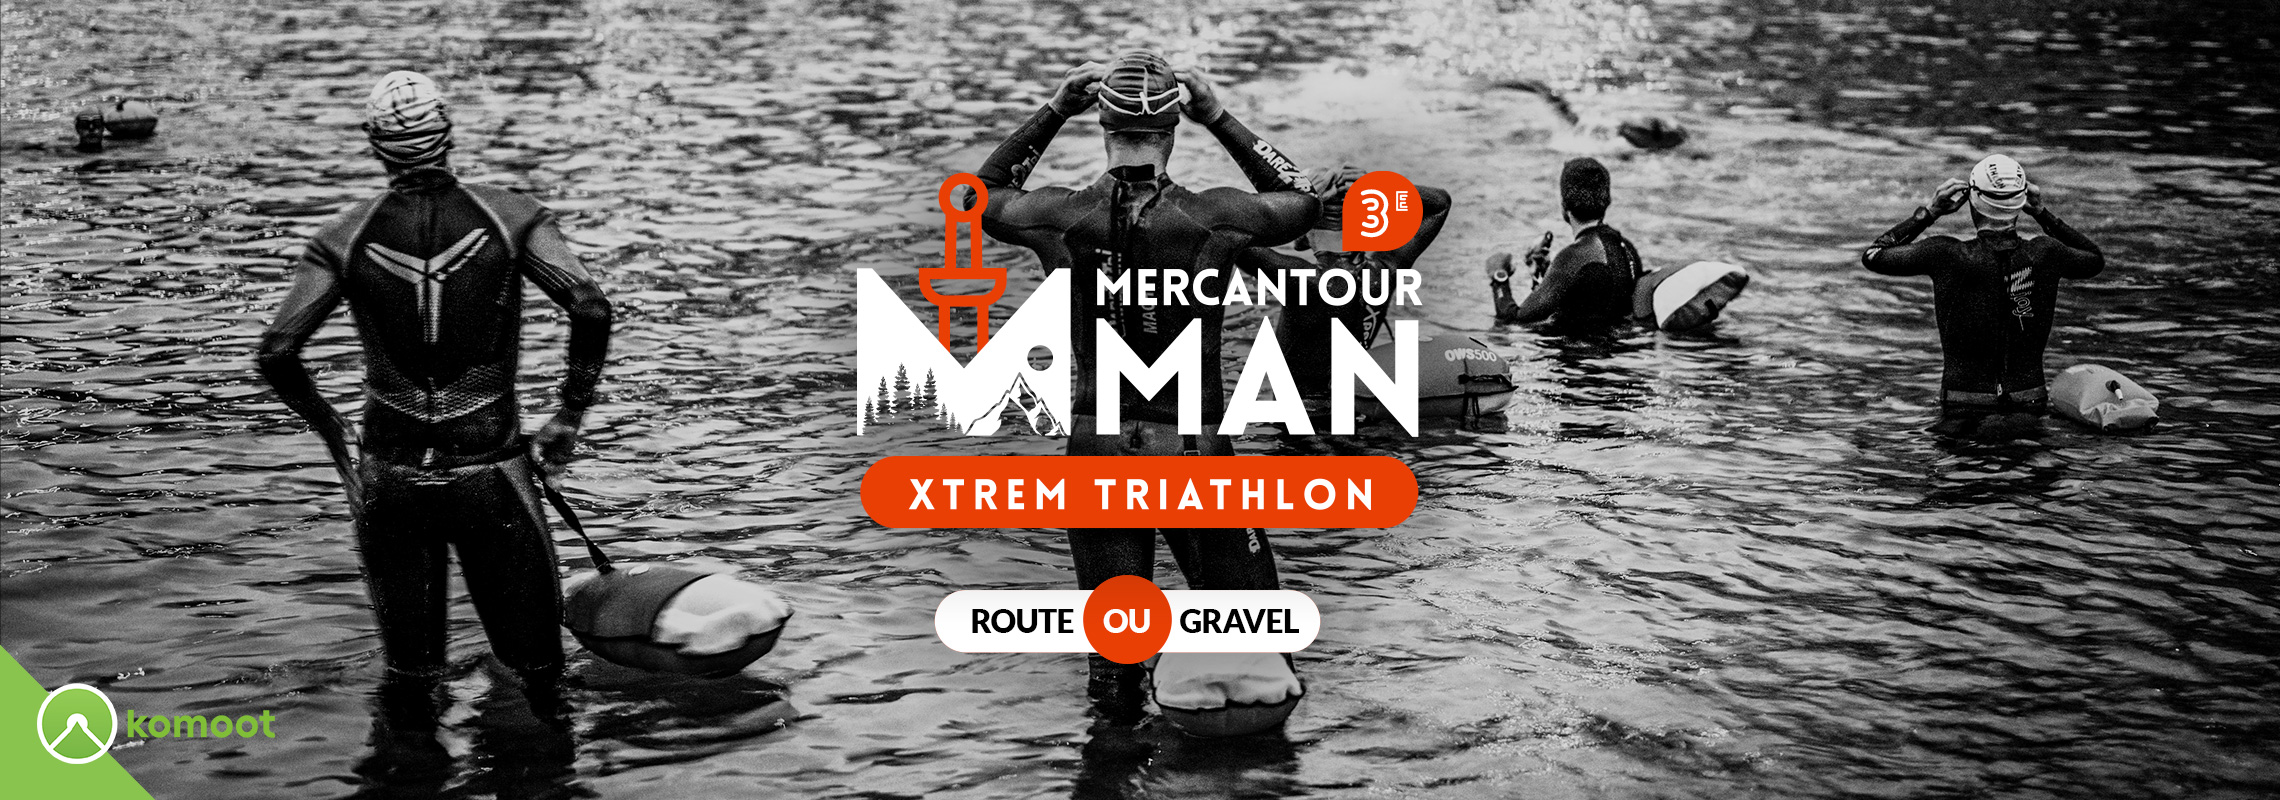 Mercantour Man Xtrem Triathlon